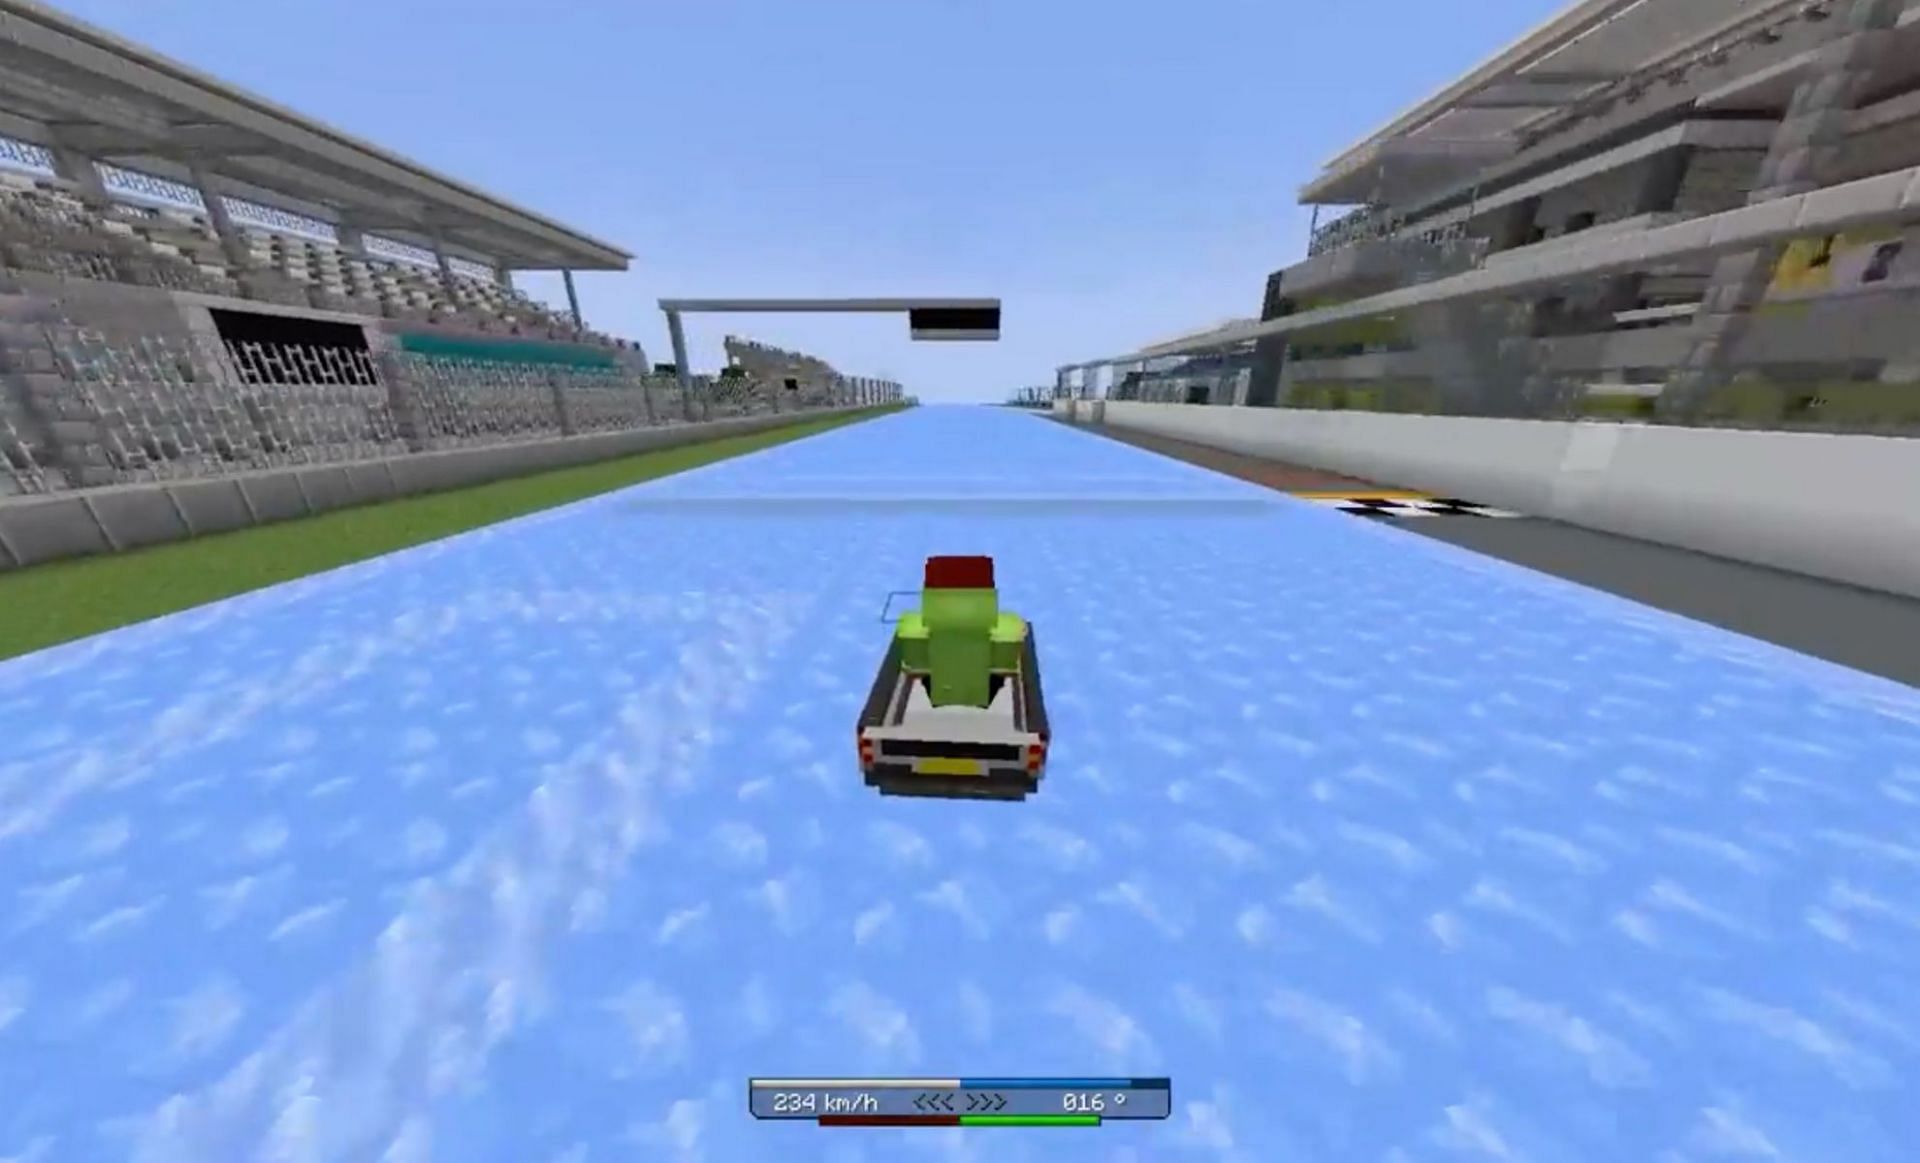 The race track with ice blocks (Image via u/playwithgustav on Reddit)